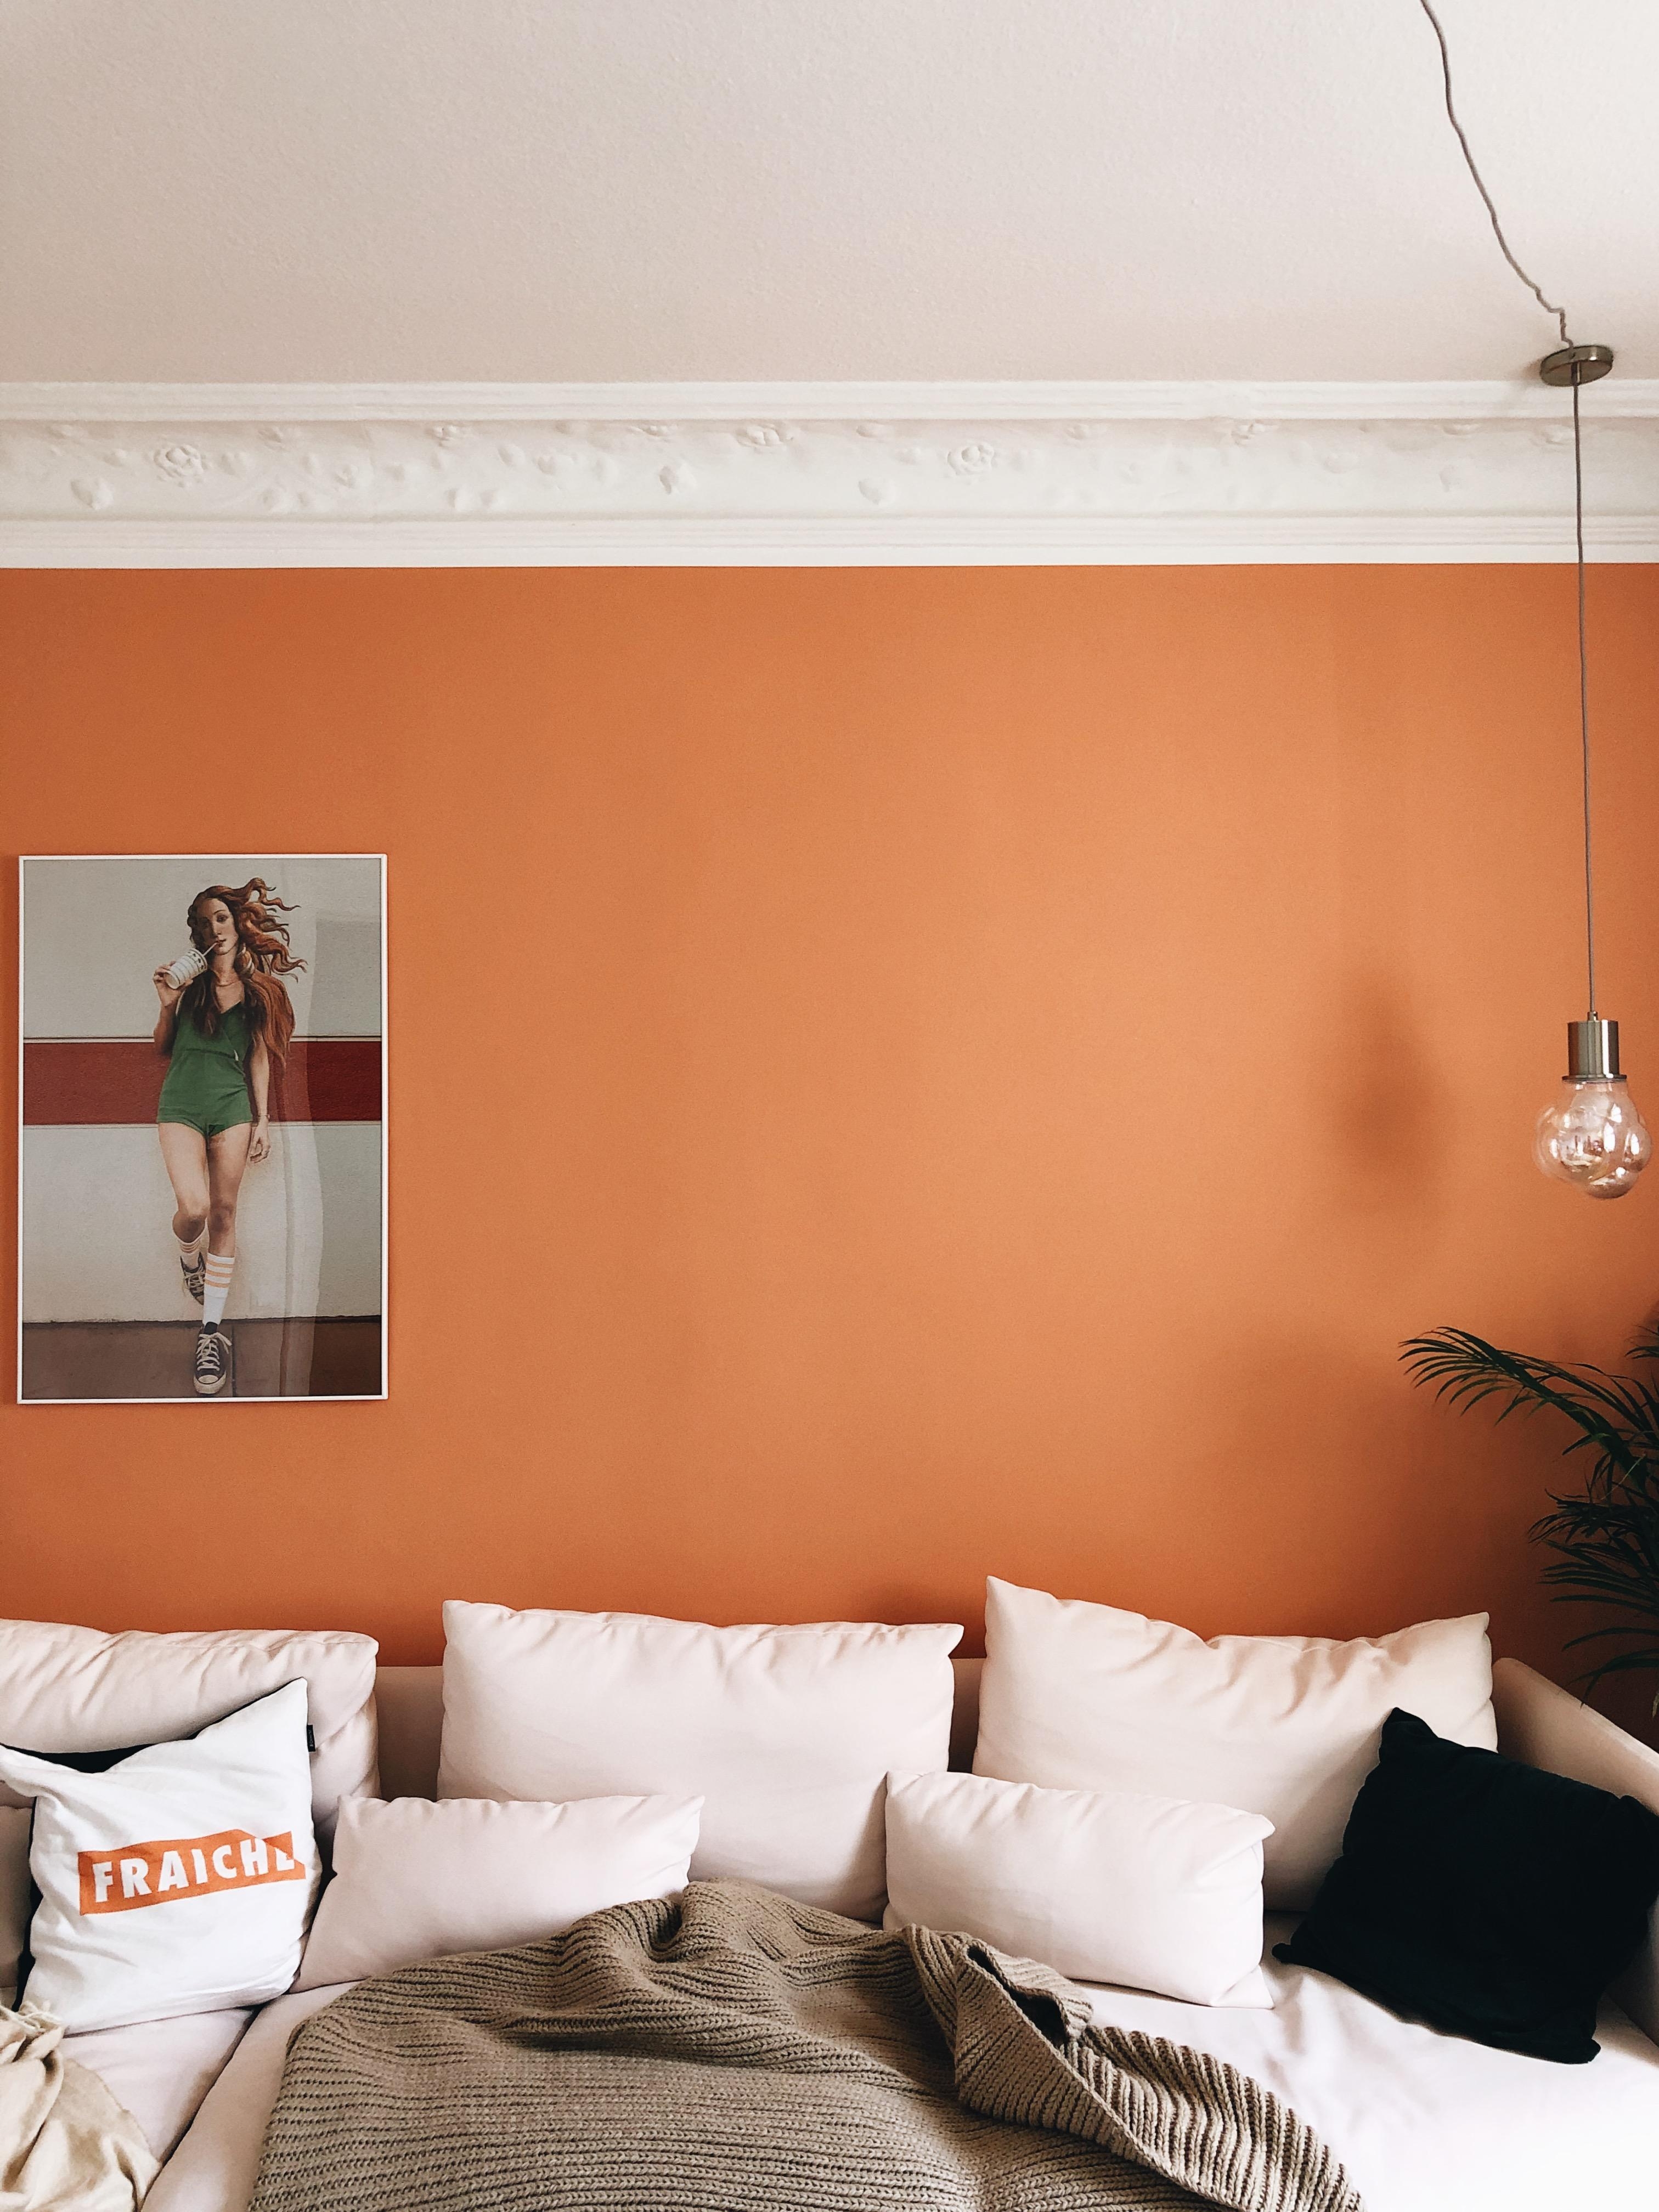 Wenn's draußen auch grau sein mag – hier ganz sicher nicht.
#orange #wandfarbe #wallcolour #wohnzimmer #livingroom #sofa